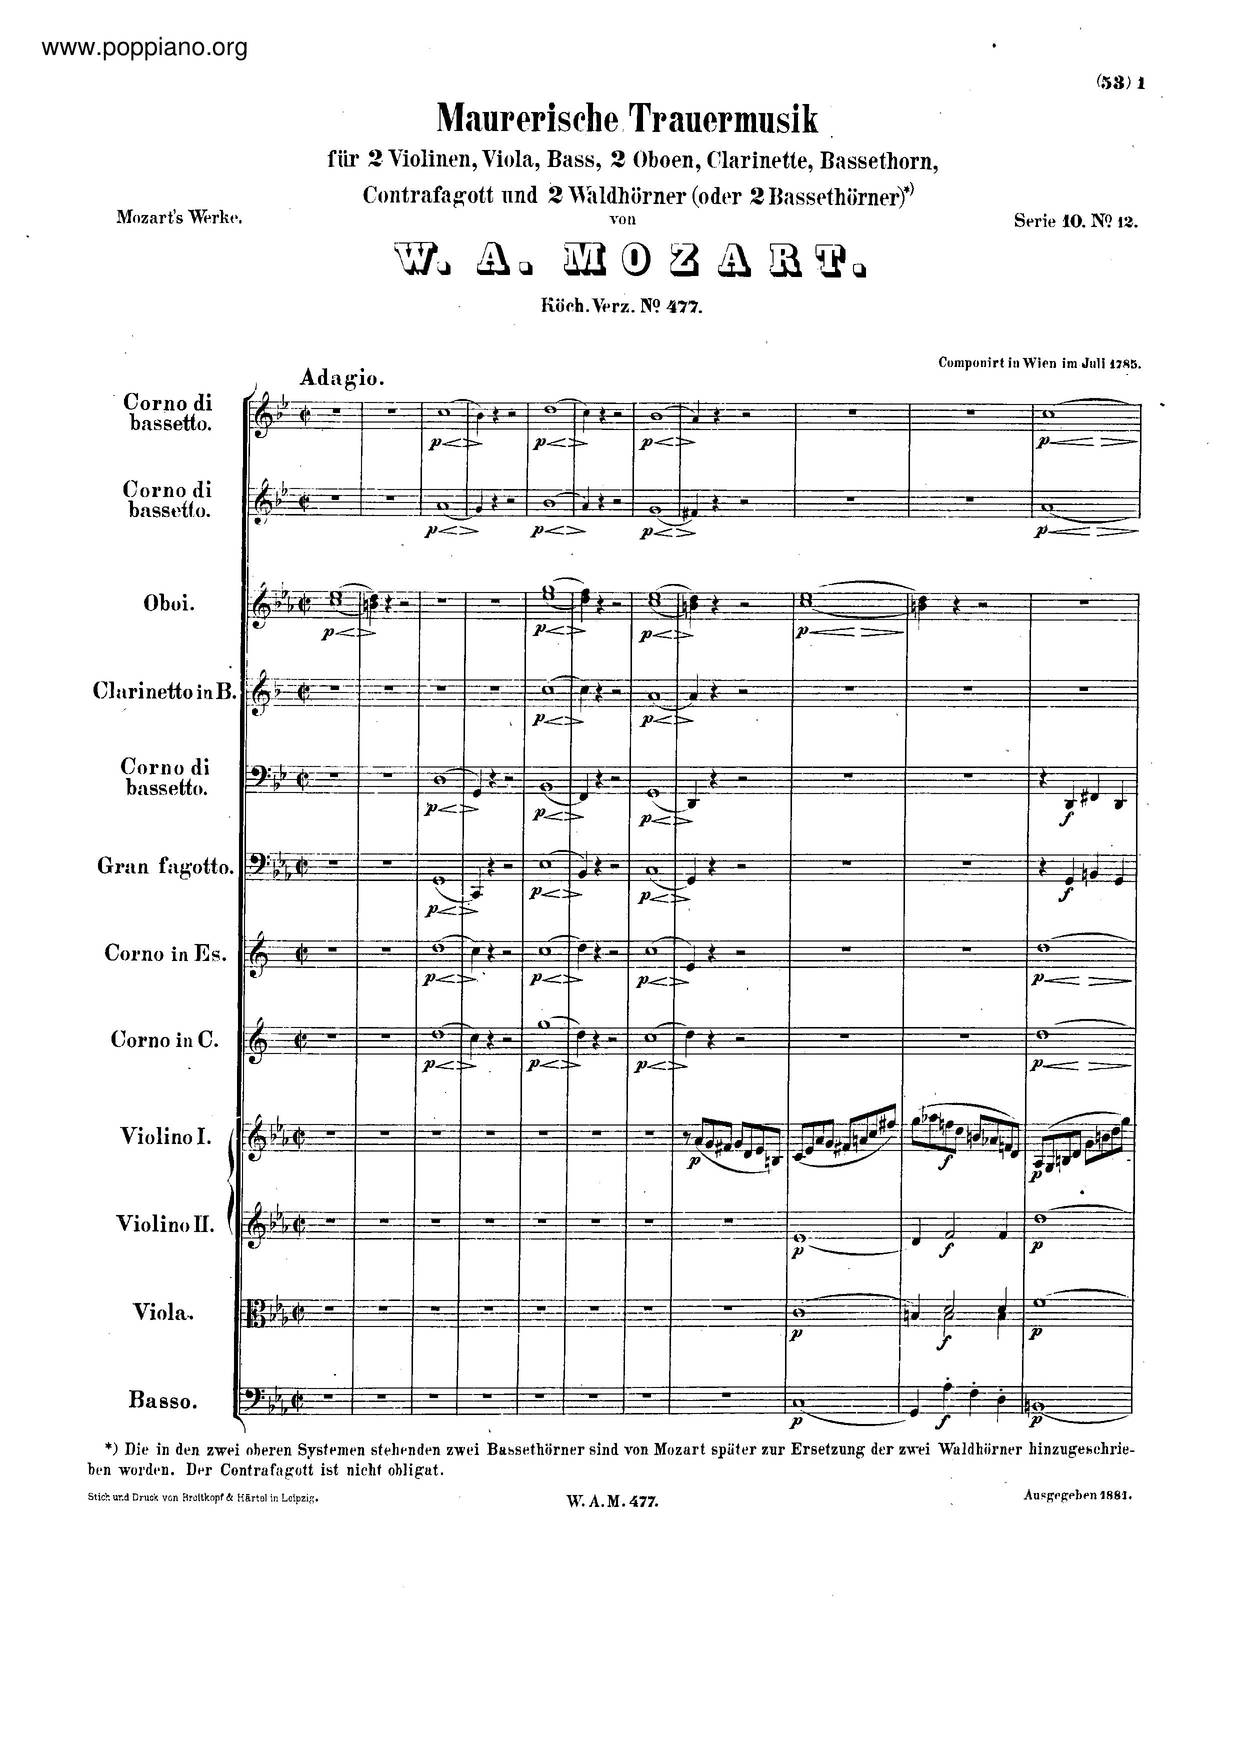 Maurerische Trauermusik, K. 477/479A琴譜